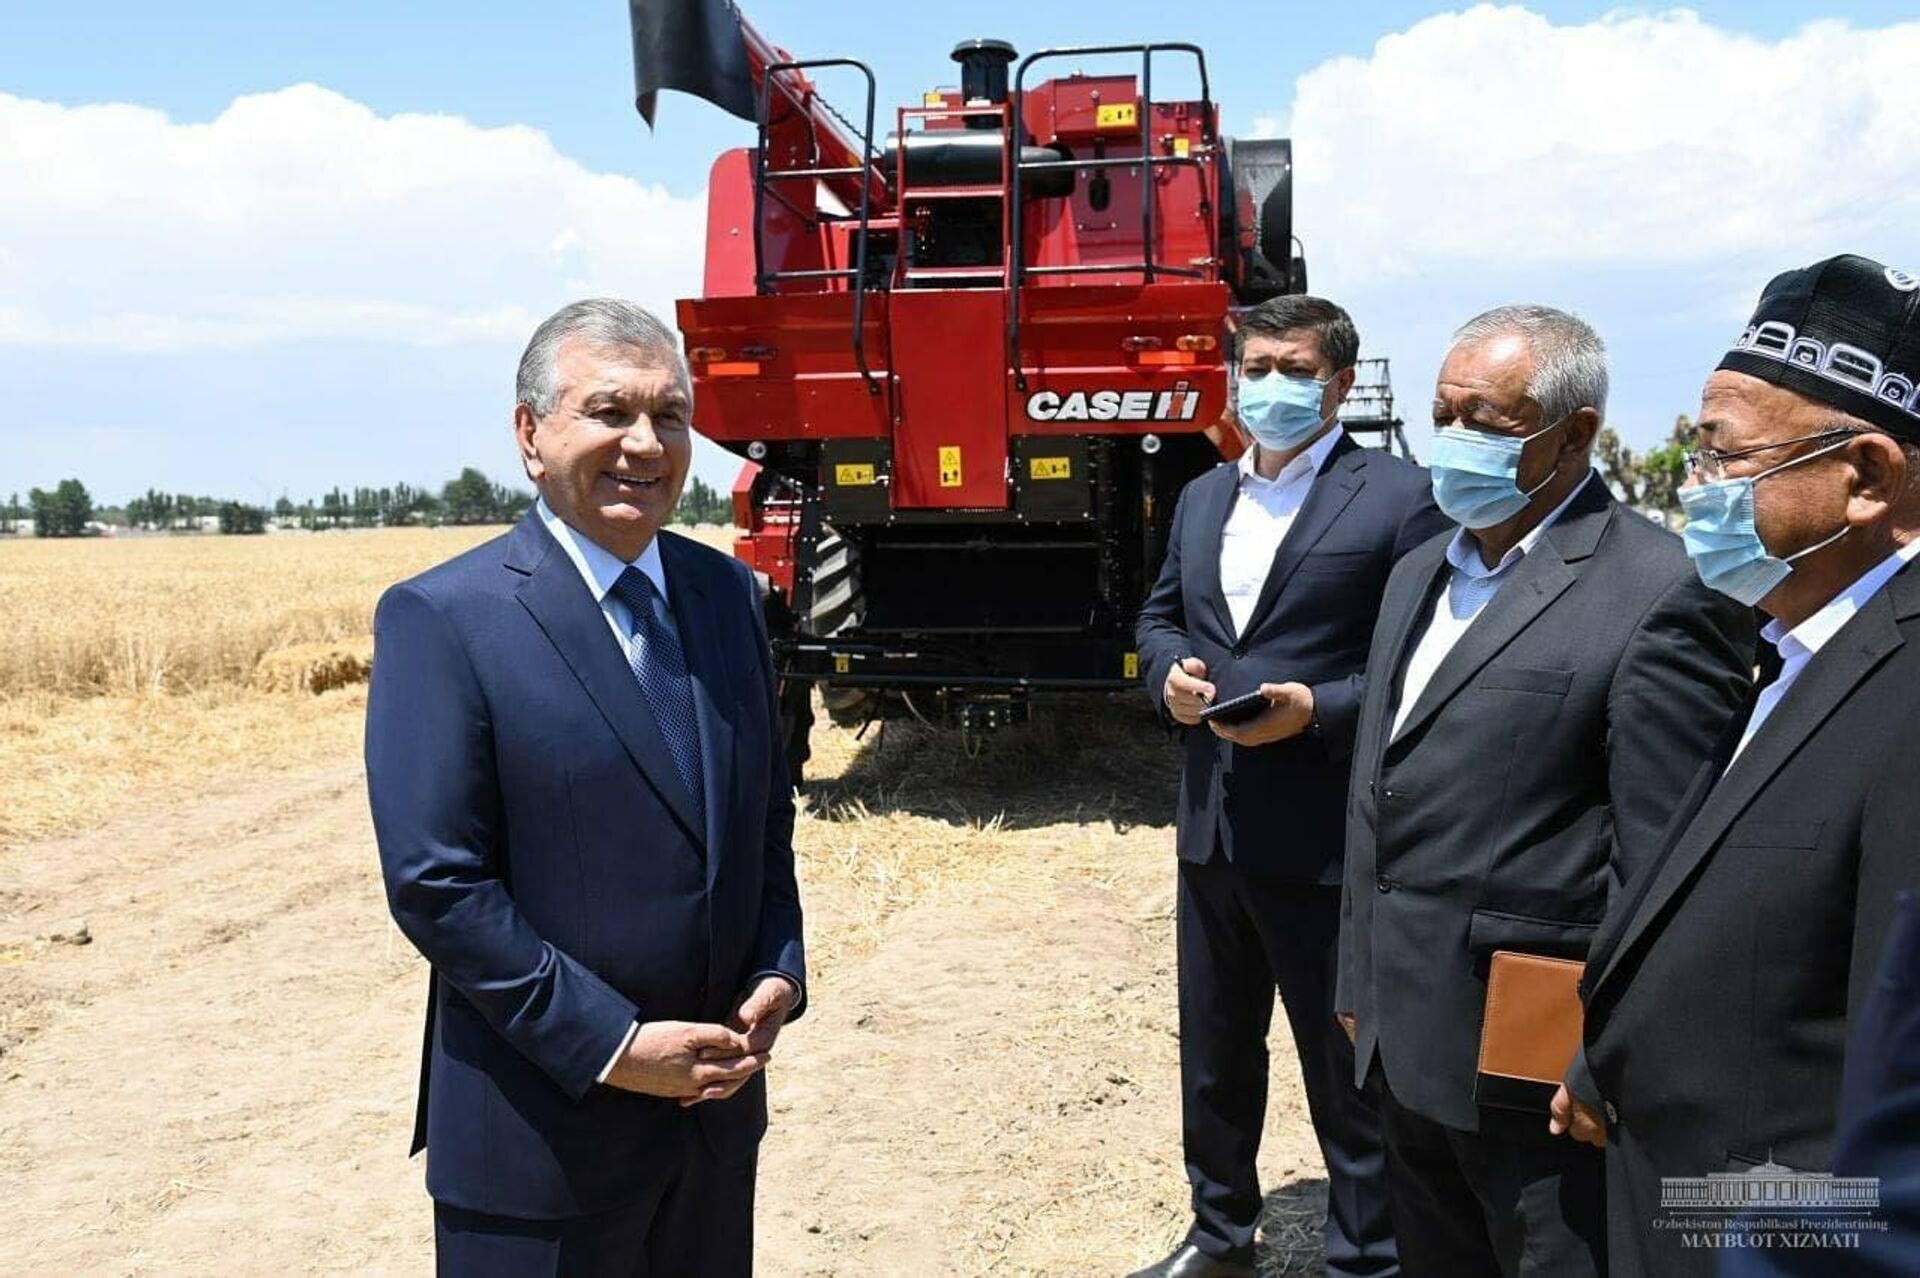 Президент Узбекистана посетил фермерское хозяйство Рустамжон замин ривожи в Избасканском районе Андижанской области - Sputnik Узбекистан, 1920, 17.06.2021